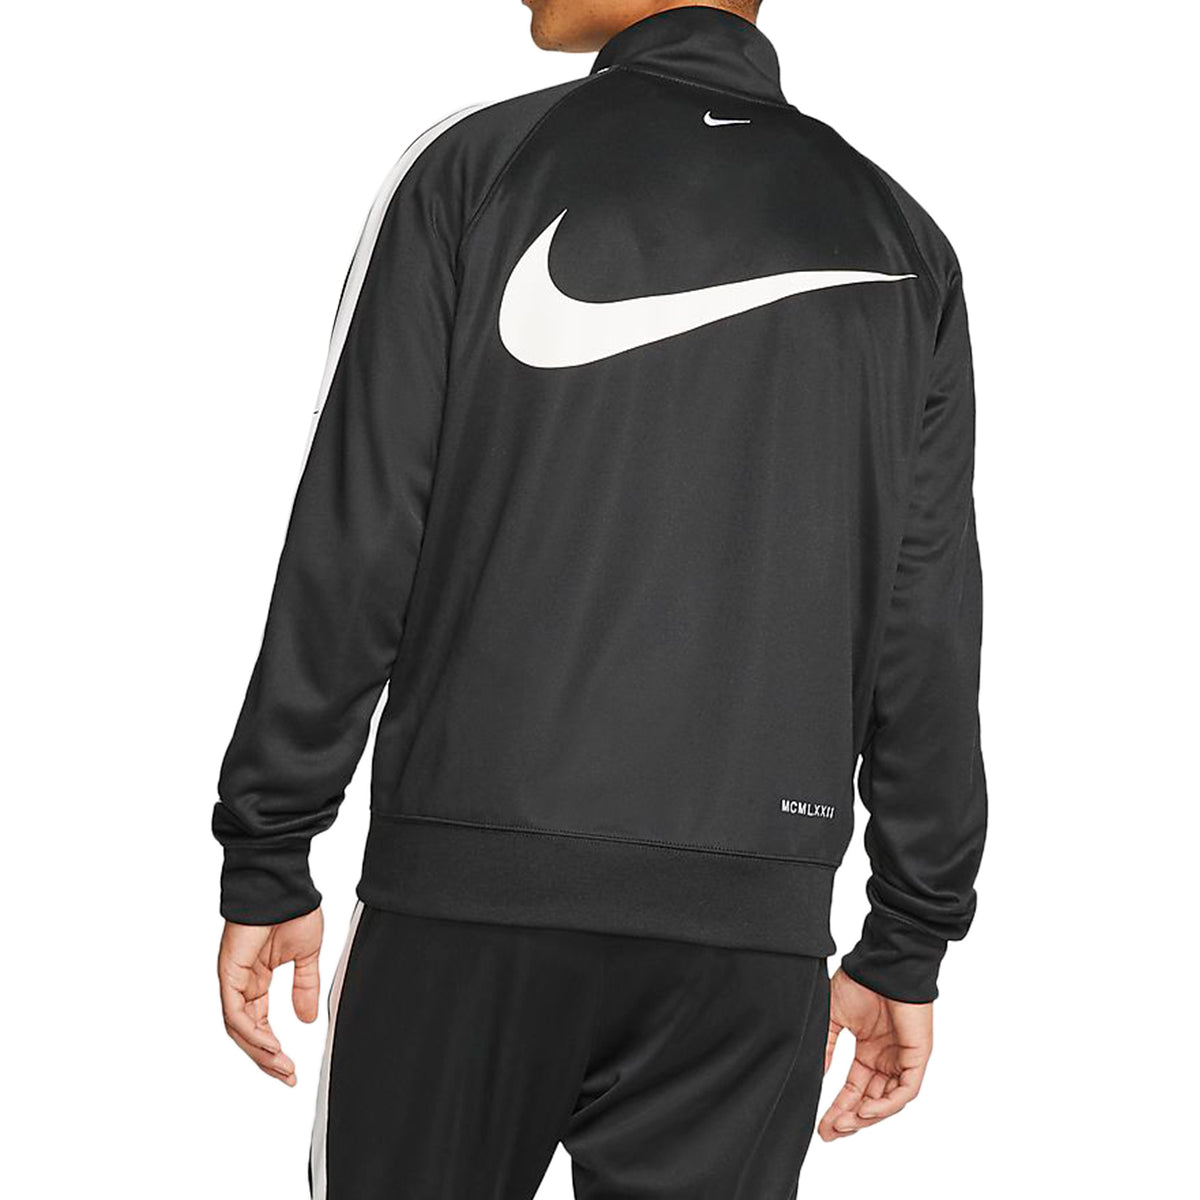 Nike Sportswear Swoosh Jacket Mens Style : Cj4884